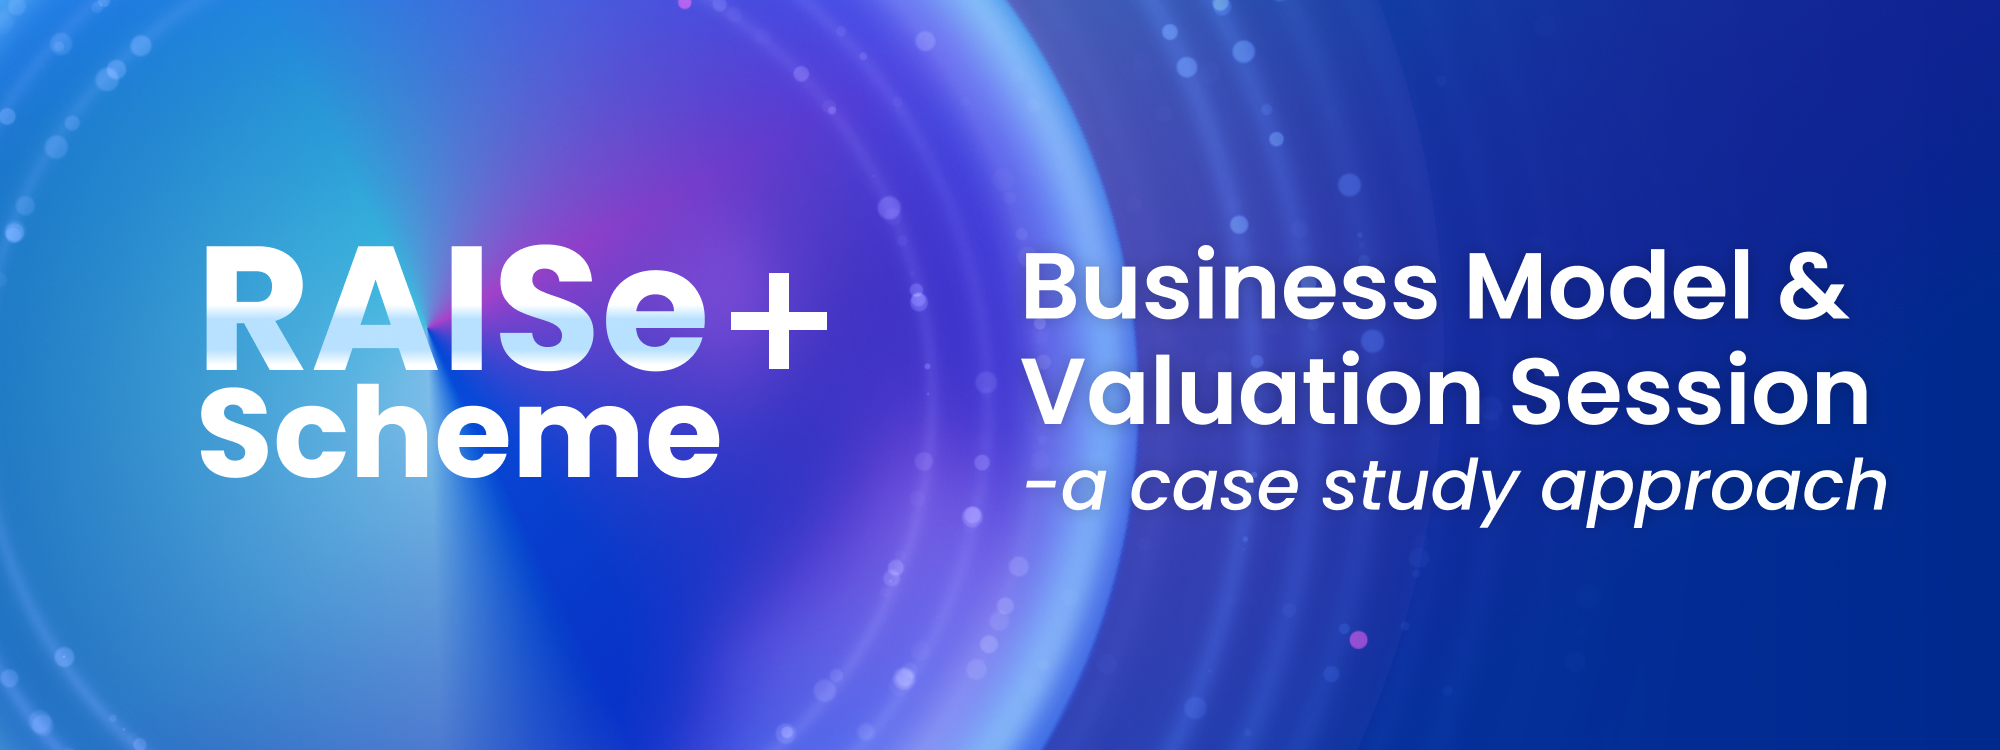 RAISe+ Scheme: Business Model & Valuation Session (7 Sep)